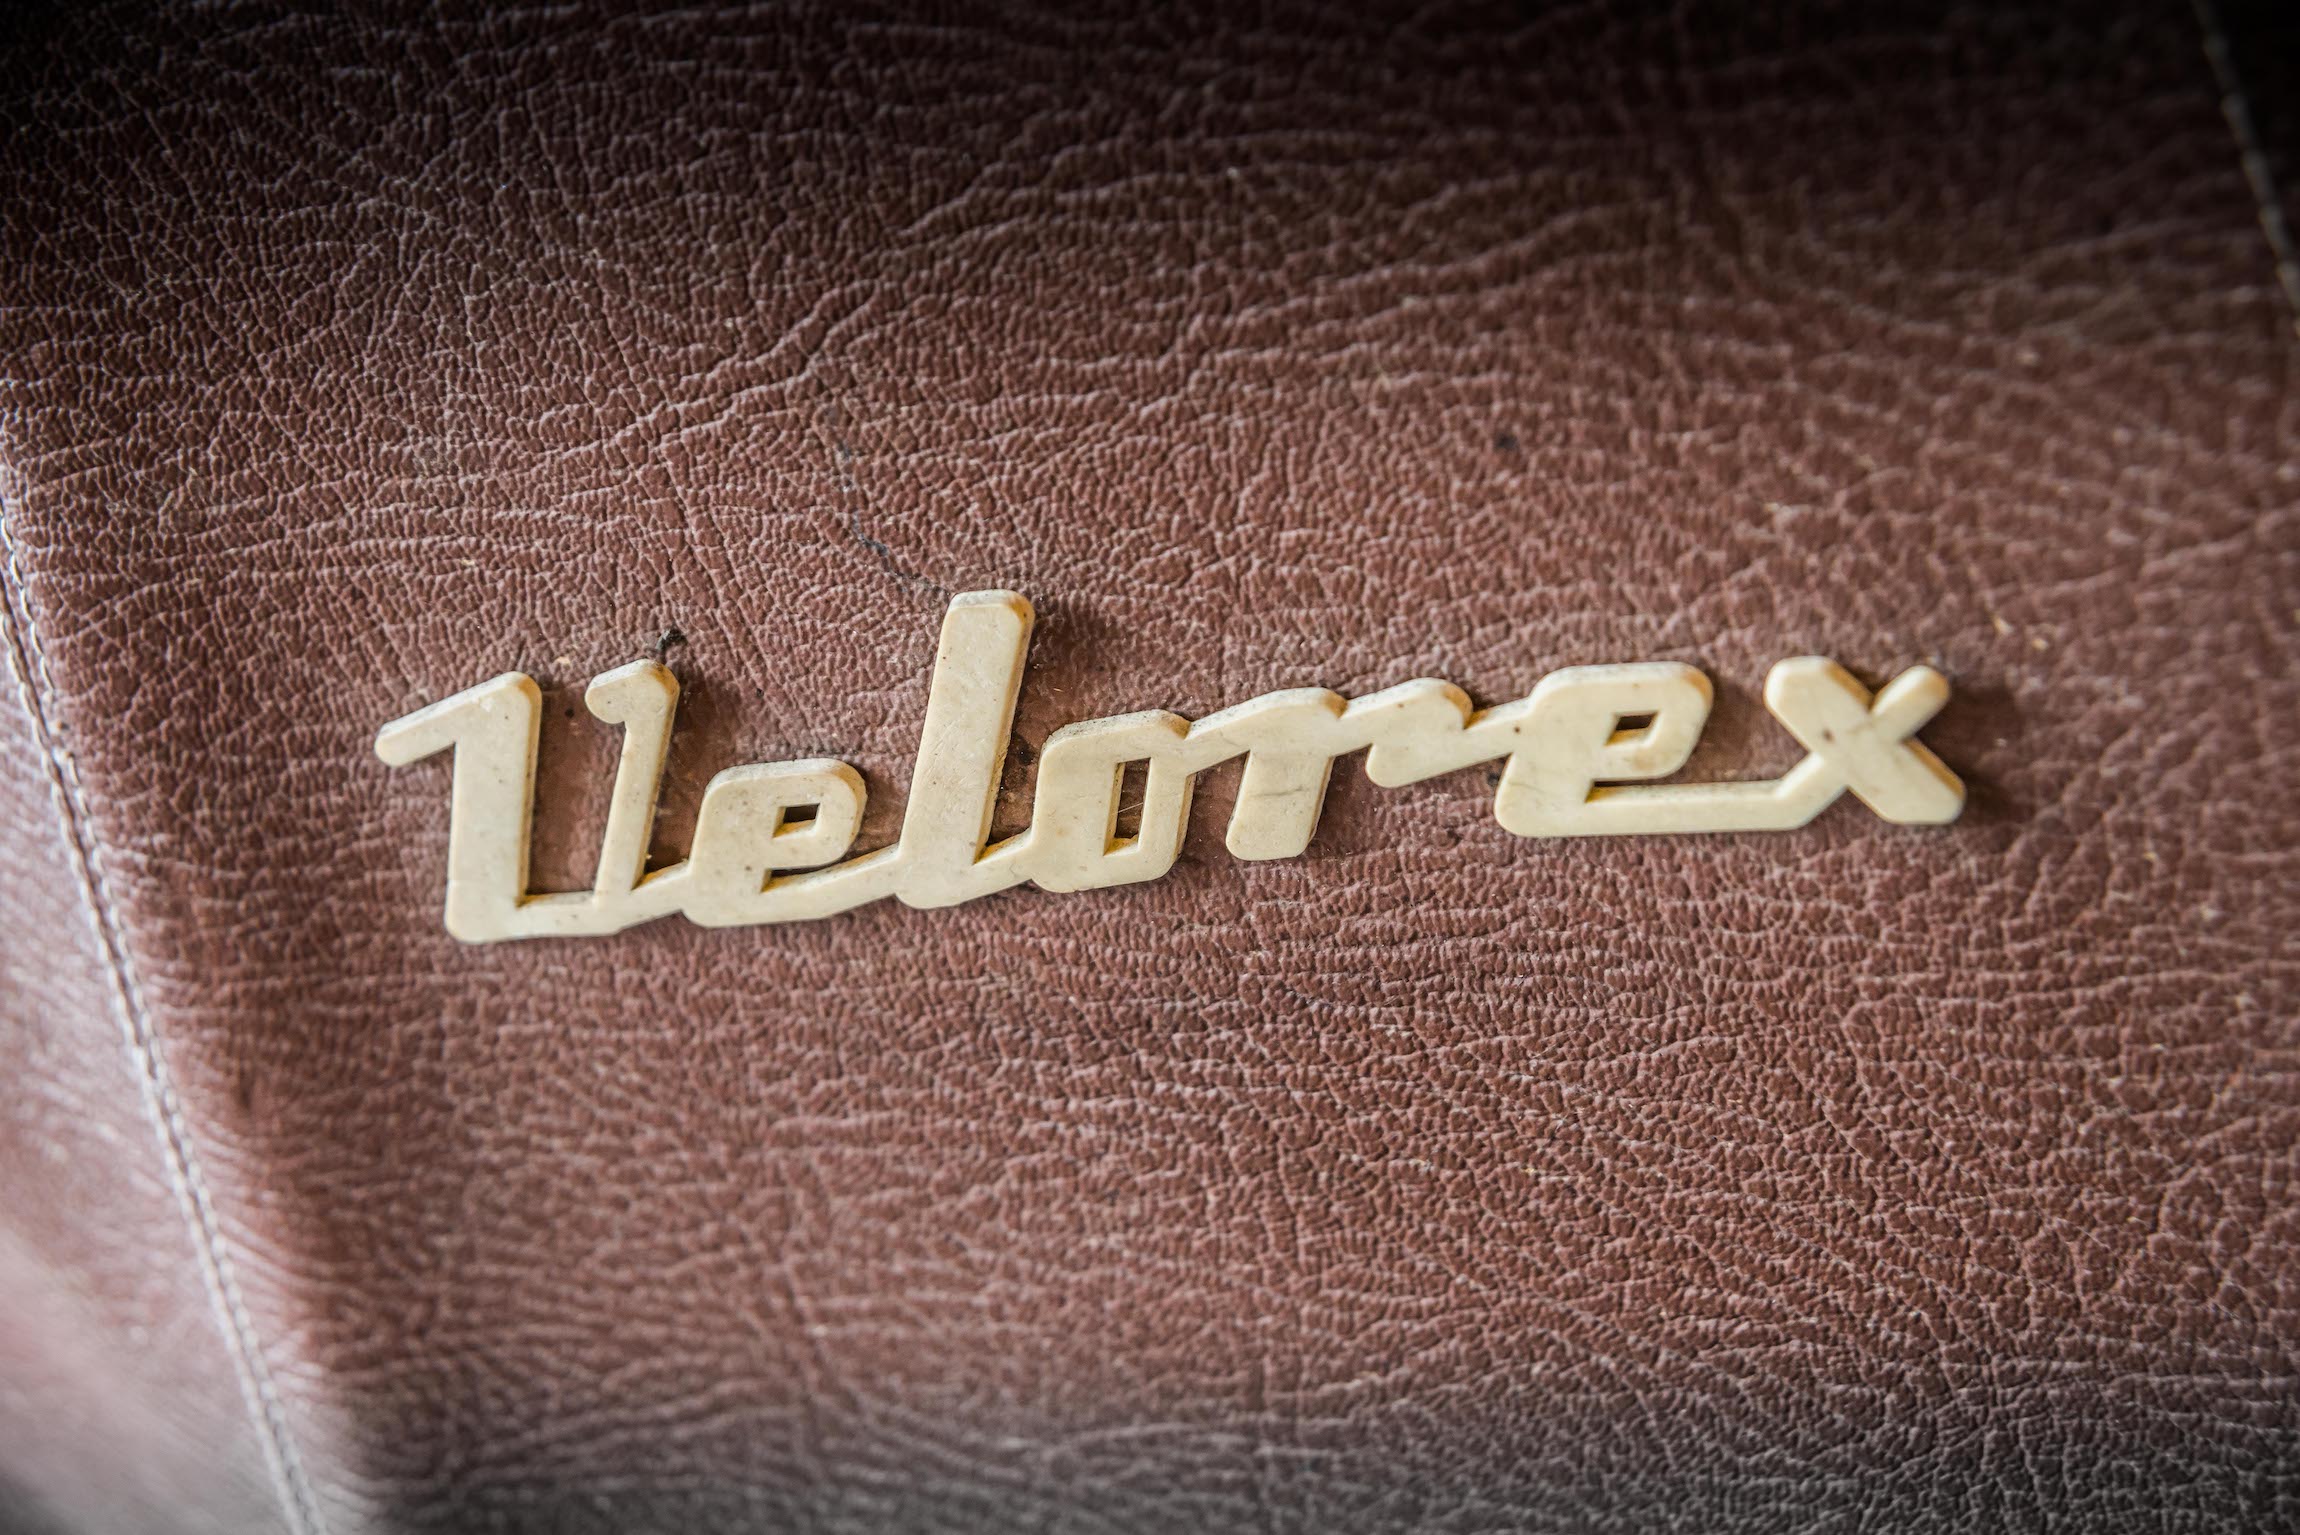 Velorex badge